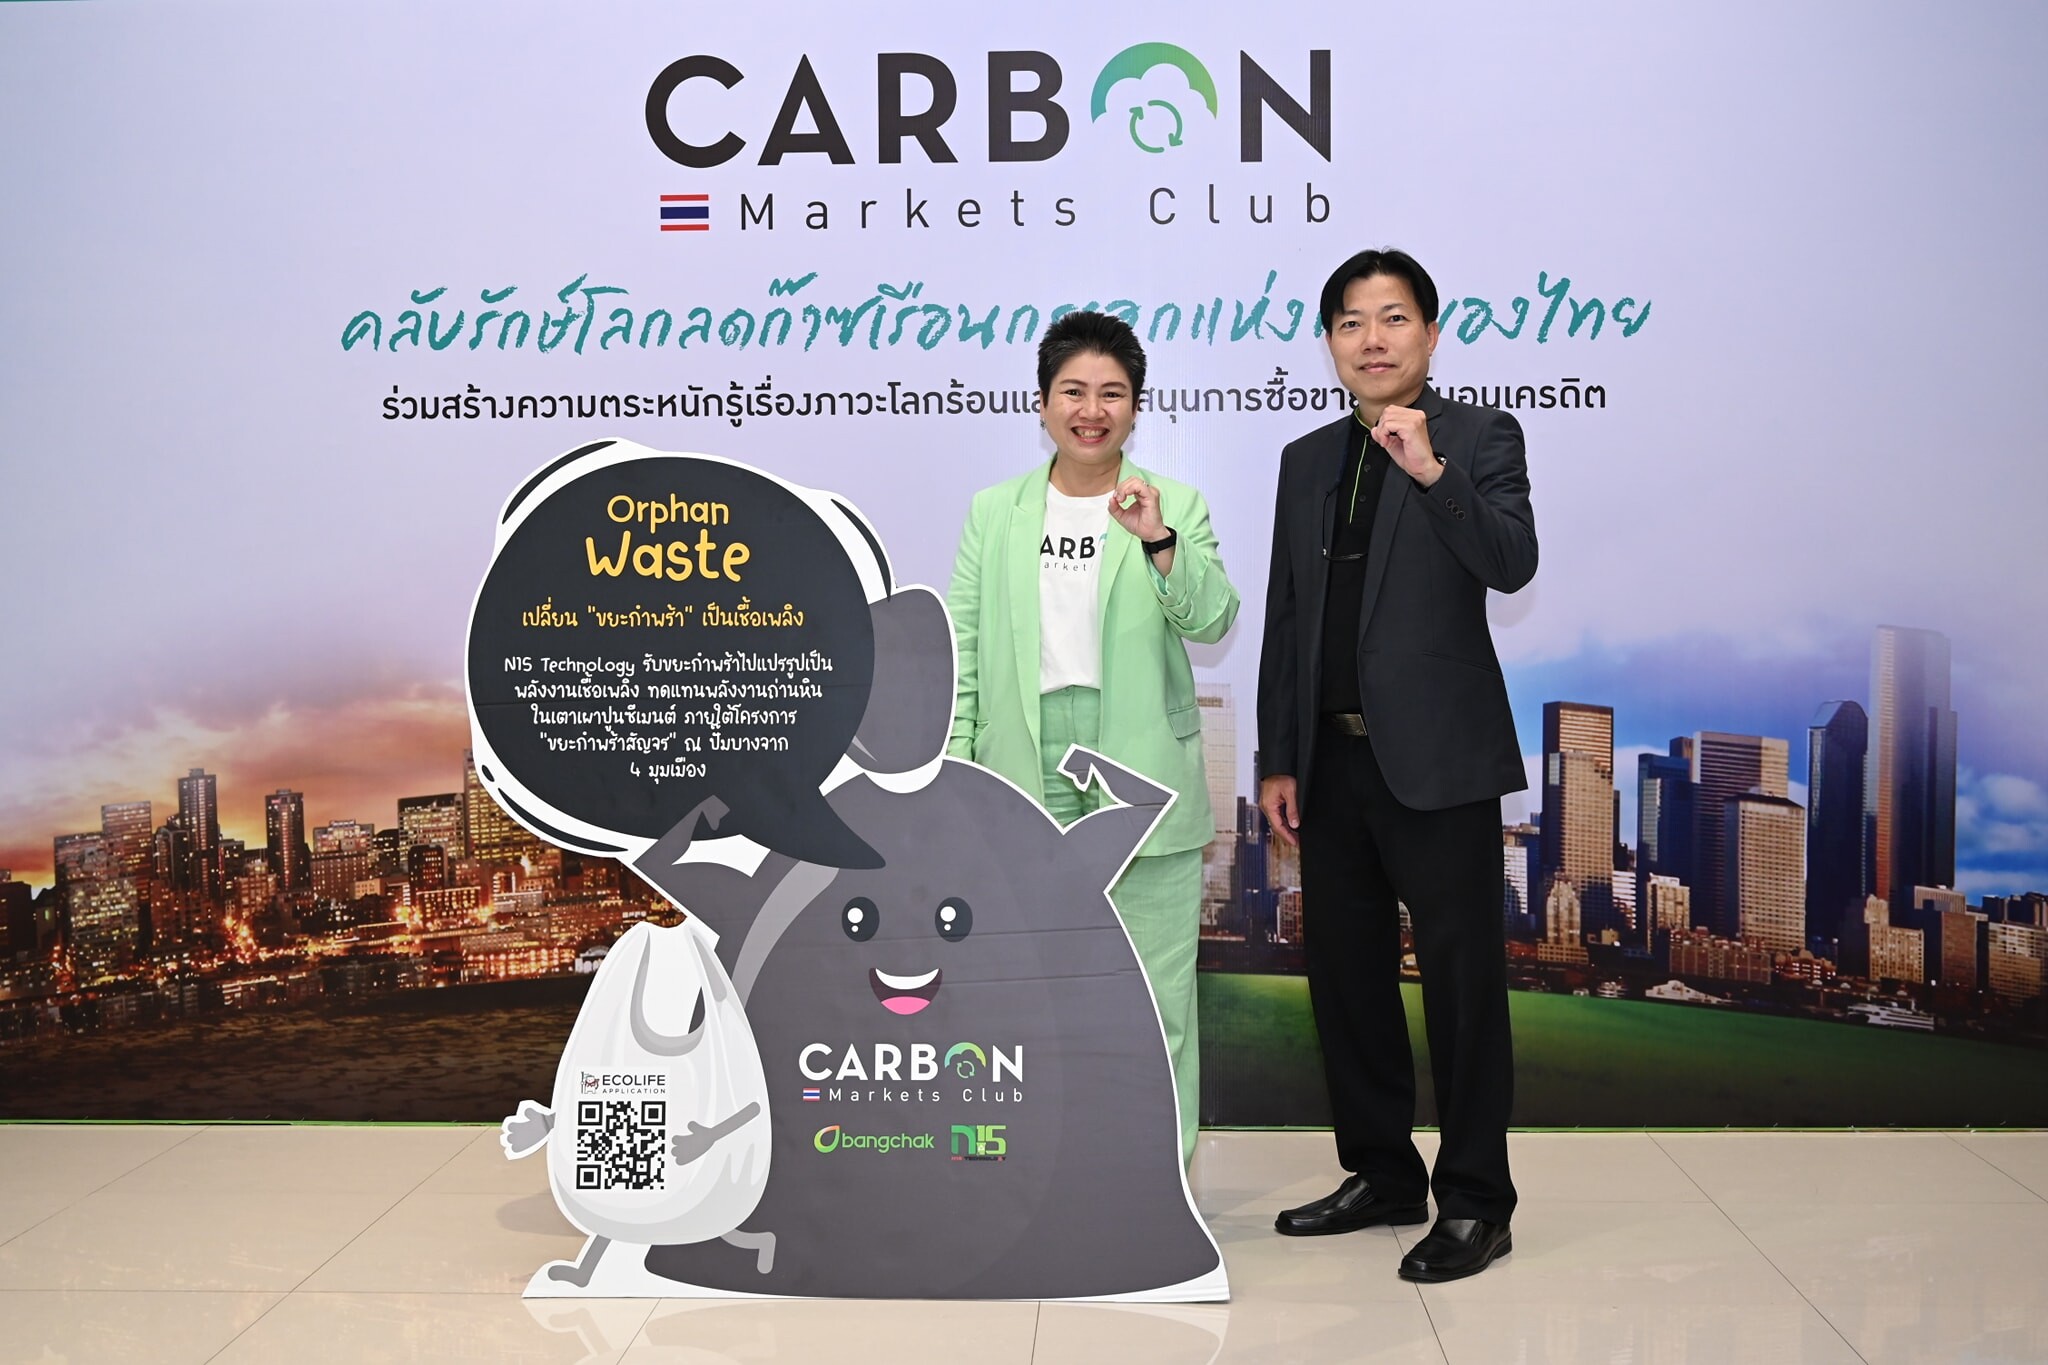 N15 Technology ในกลุ่มบริษัท สากล เอนเนอยี จำกัด (มหาชน) ได้รับเชิญเข้าร่วมงาน "ลด ละ เริ่ม กับ Carbon Markets Club"